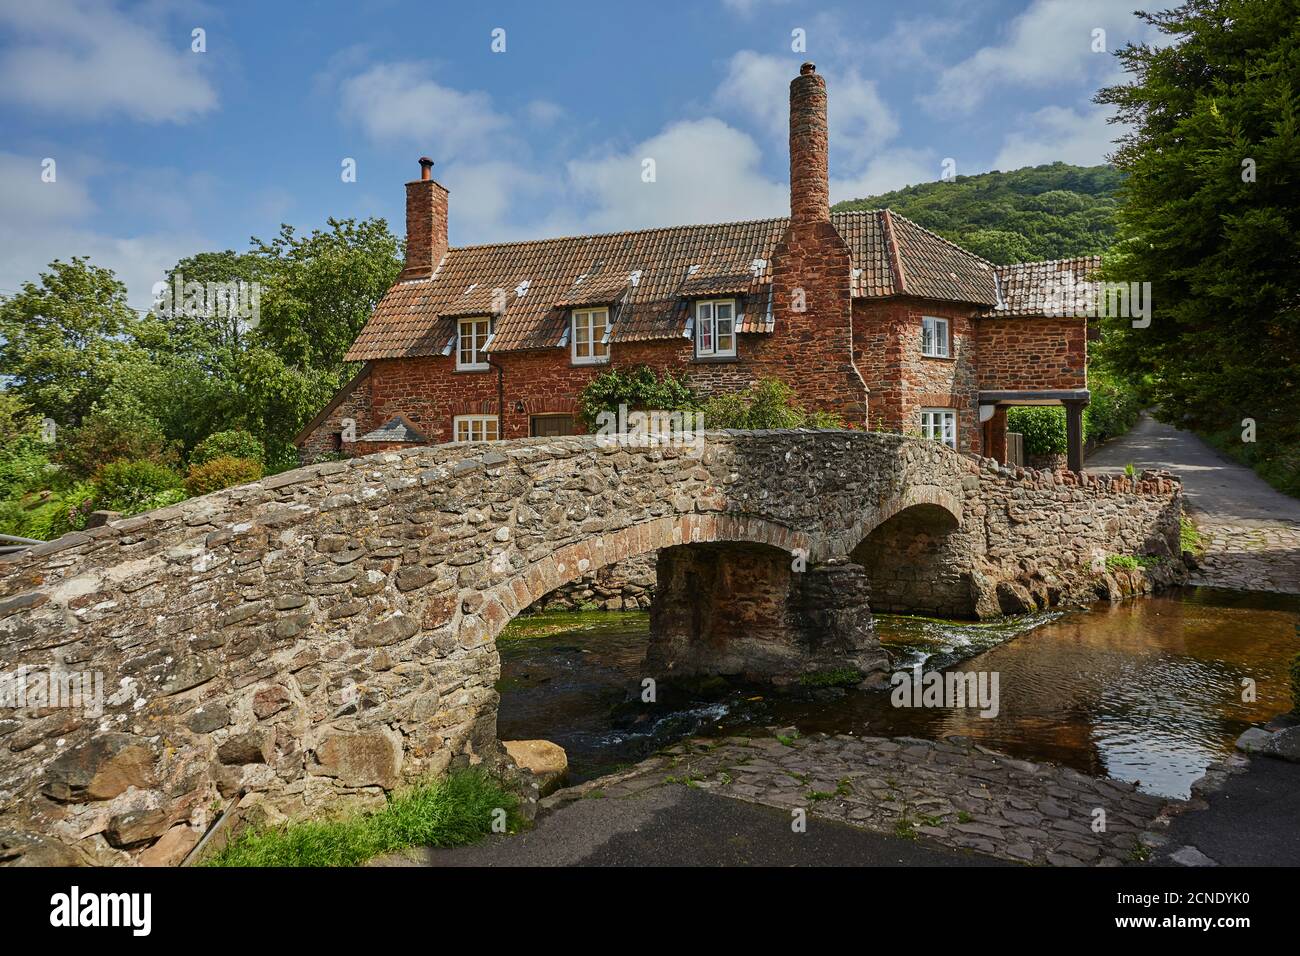 Die Packhorse Brücke und alte Hütten im Dorf Allerford, Exmoor Nationalpark, Somerset, England, Vereinigtes Königreich, Europa Stockfoto